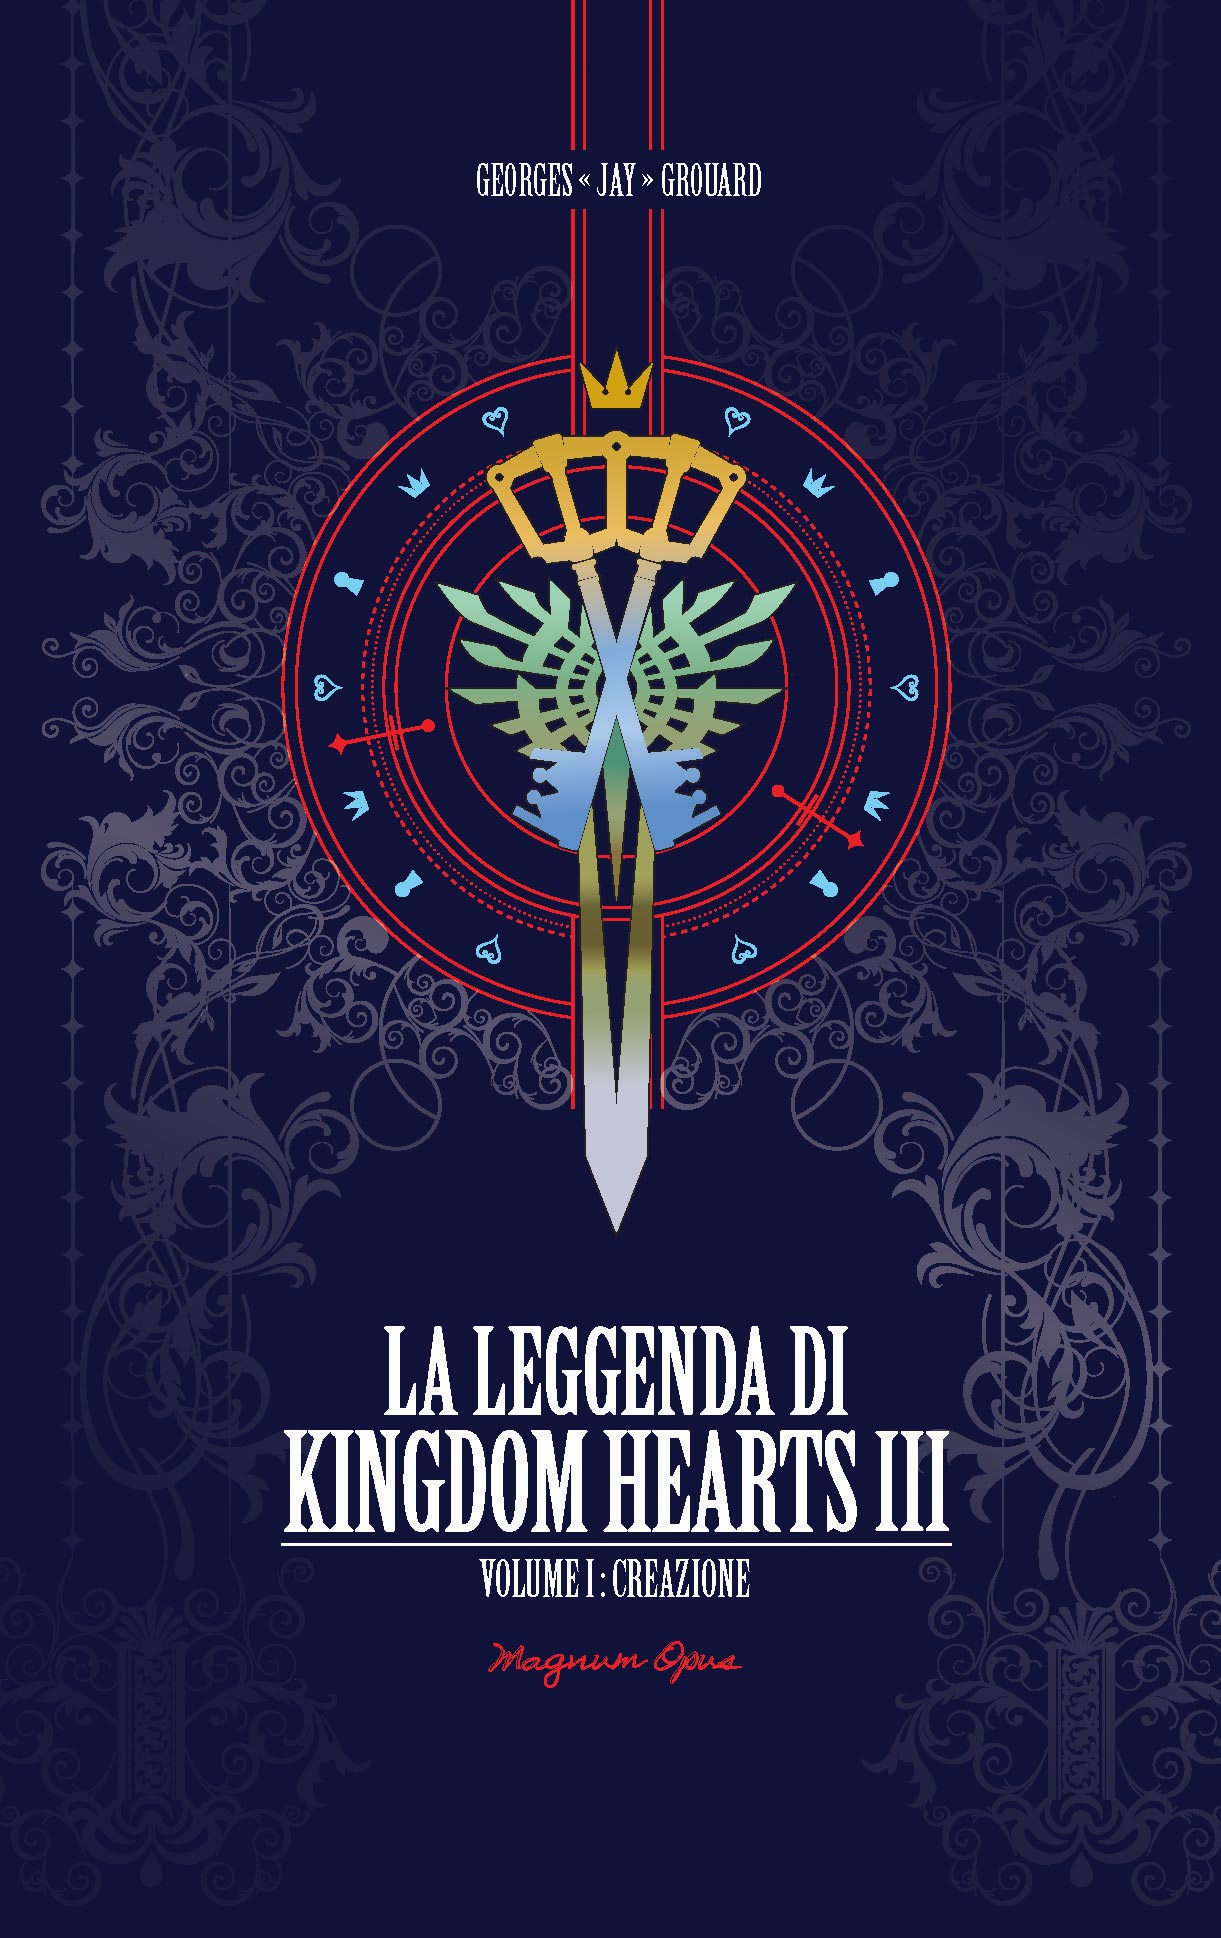 Libri Georges Jay Grouard - La Leggenda Di Kingdom Hearts III Vol 01 - Creazione NUOVO SIGILLATO, EDIZIONE DEL 31/05/2022 SUBITO DISPONIBILE